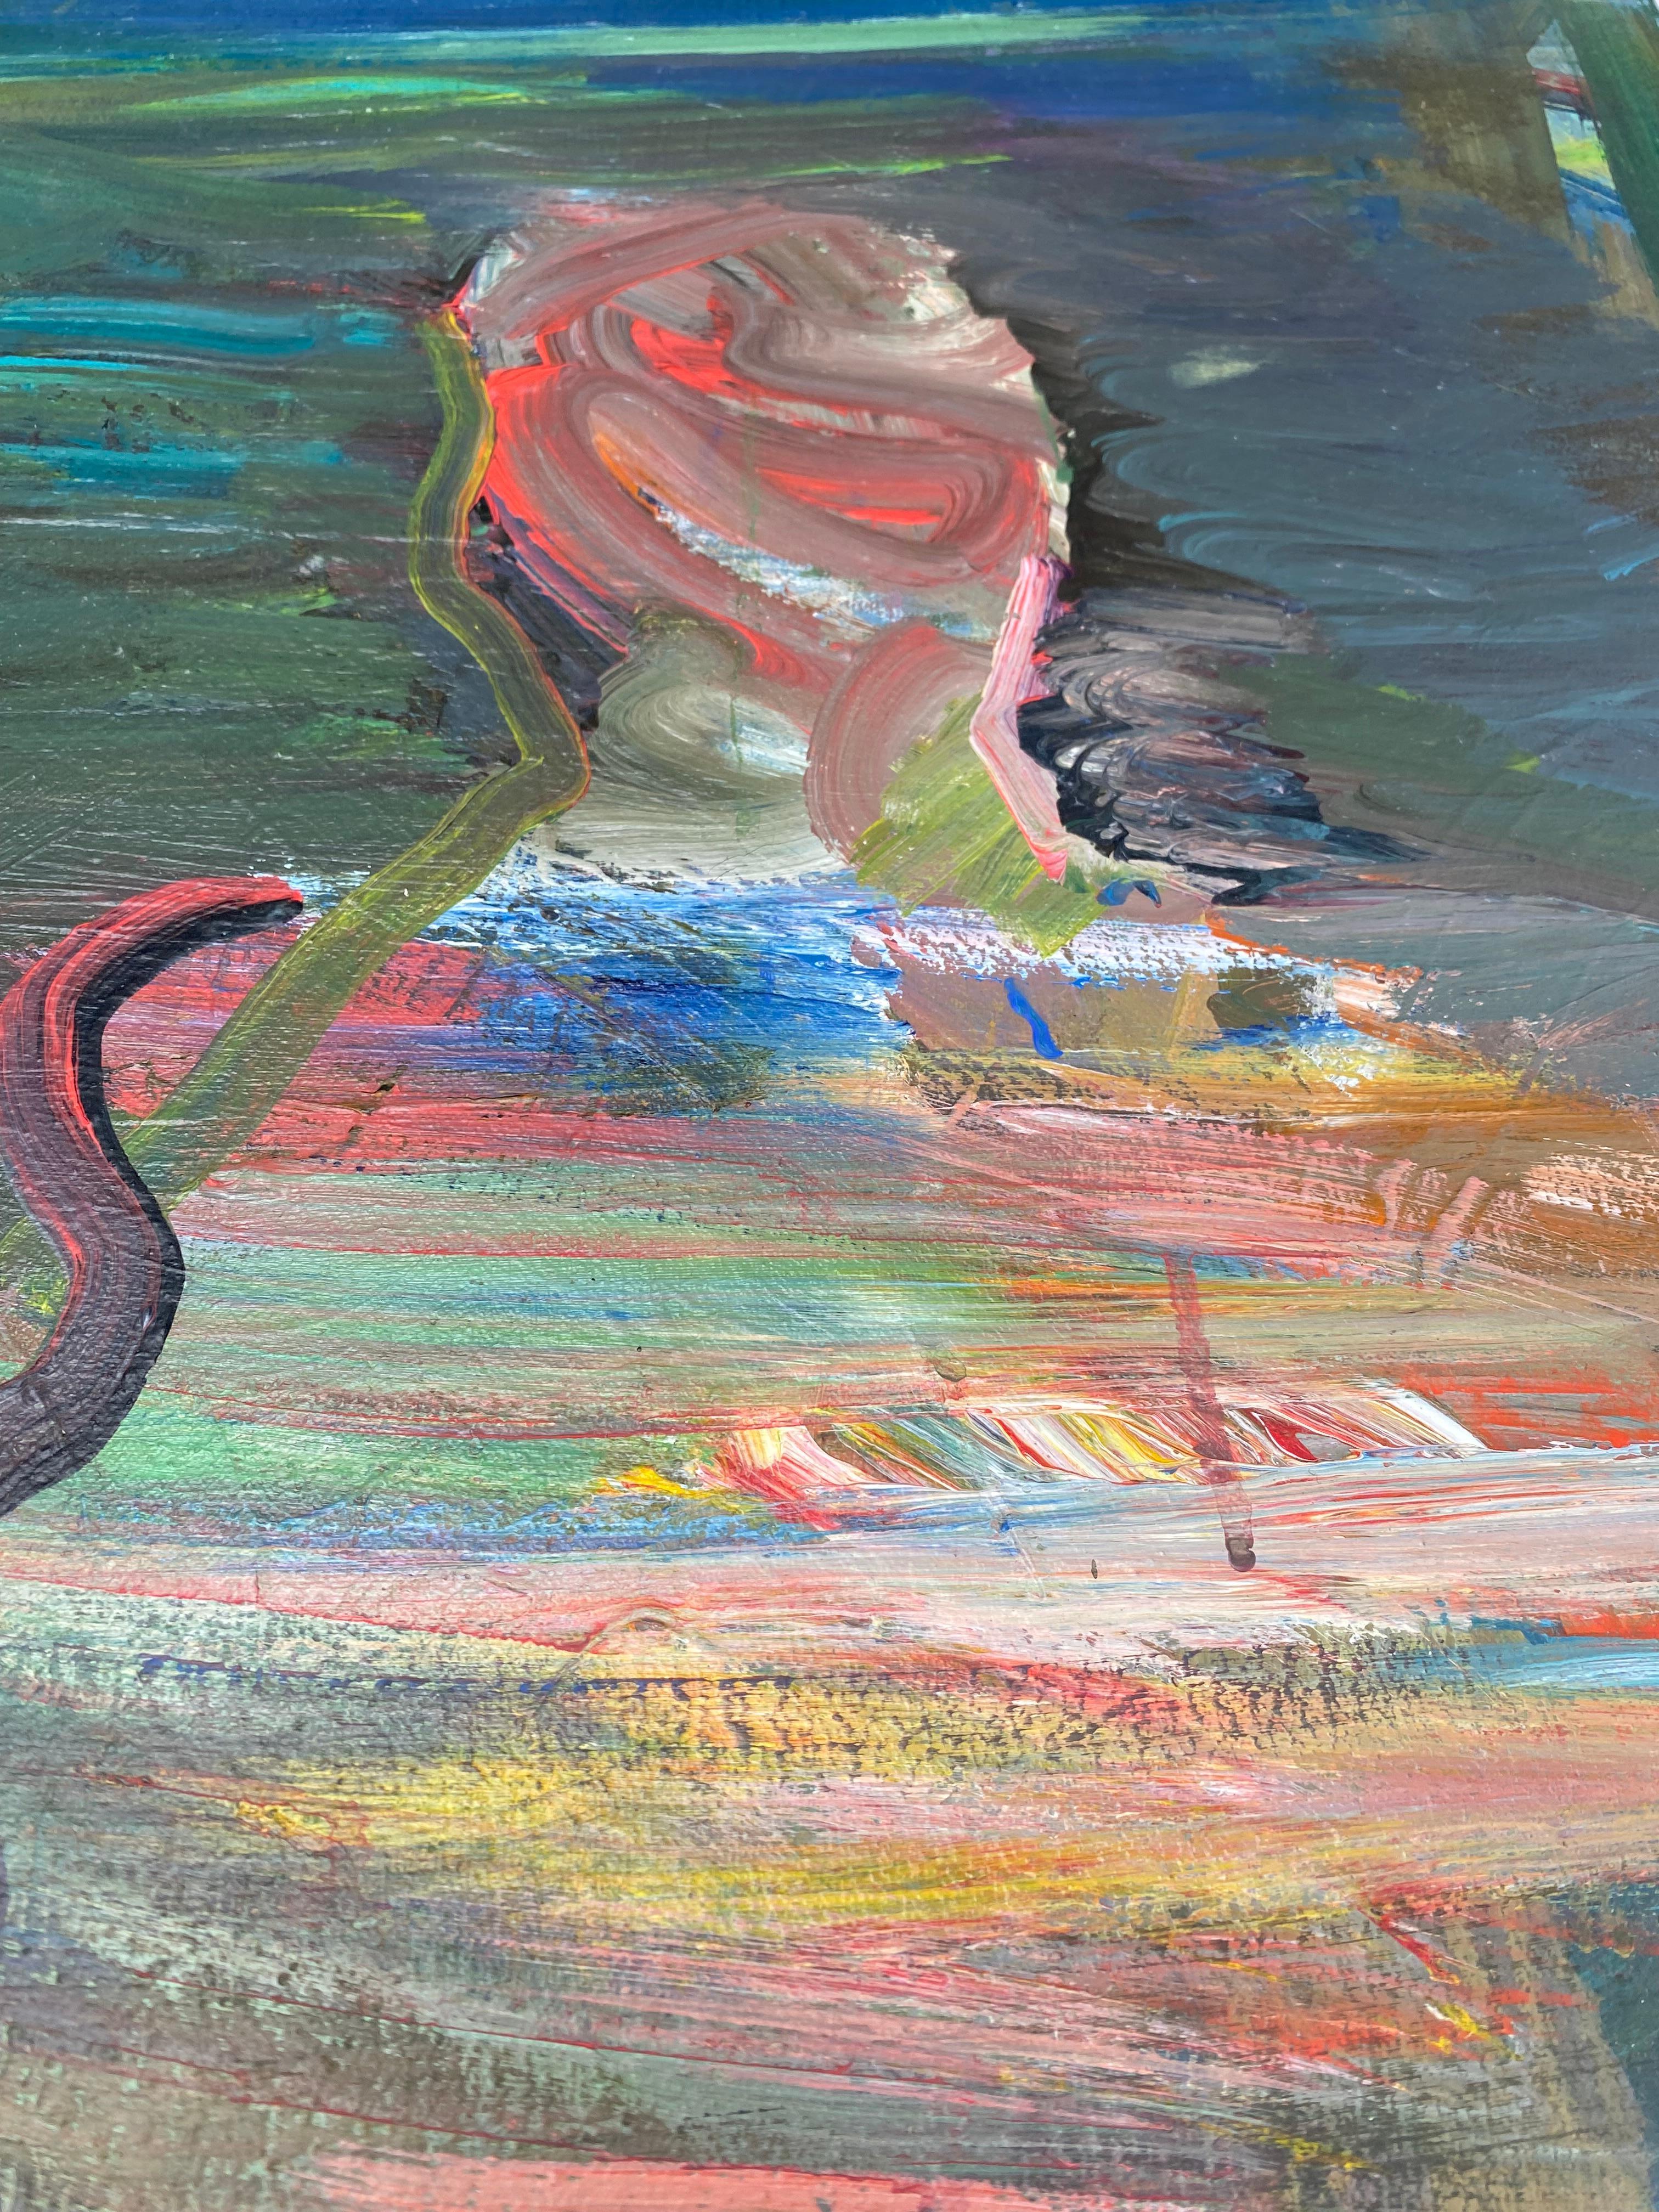 Peinture abstraite figurative vintage de Warren Fischer sur toile de lin.

Est proposée à la vente une peinture abstraite figurative sur toile de lin de l'artiste américain Warren Fischer (1943-2001). Le tableau fait partie de la succession de